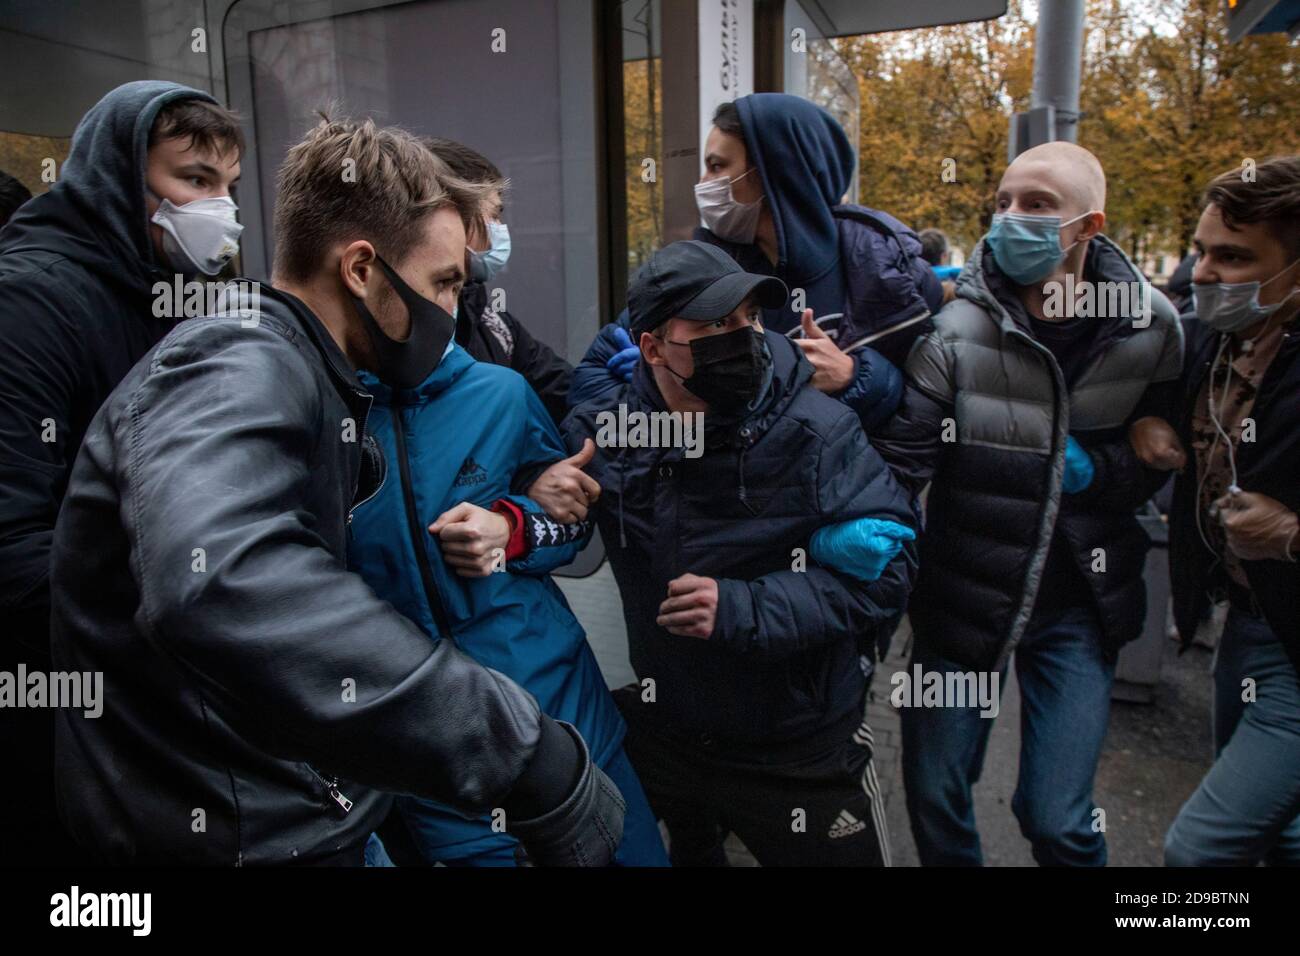 Moscou, Russie. 4 novembre, 2020 jeunes portant un masque facial pour aider à freiner la propagation du coronavirus participent à un rassemblement organisé par des nationalistes et des activistes des groupes politiques d'extrême droite, à l'occasion de la Journée nationale de l'unité à Moscou, en Russie Banque D'Images